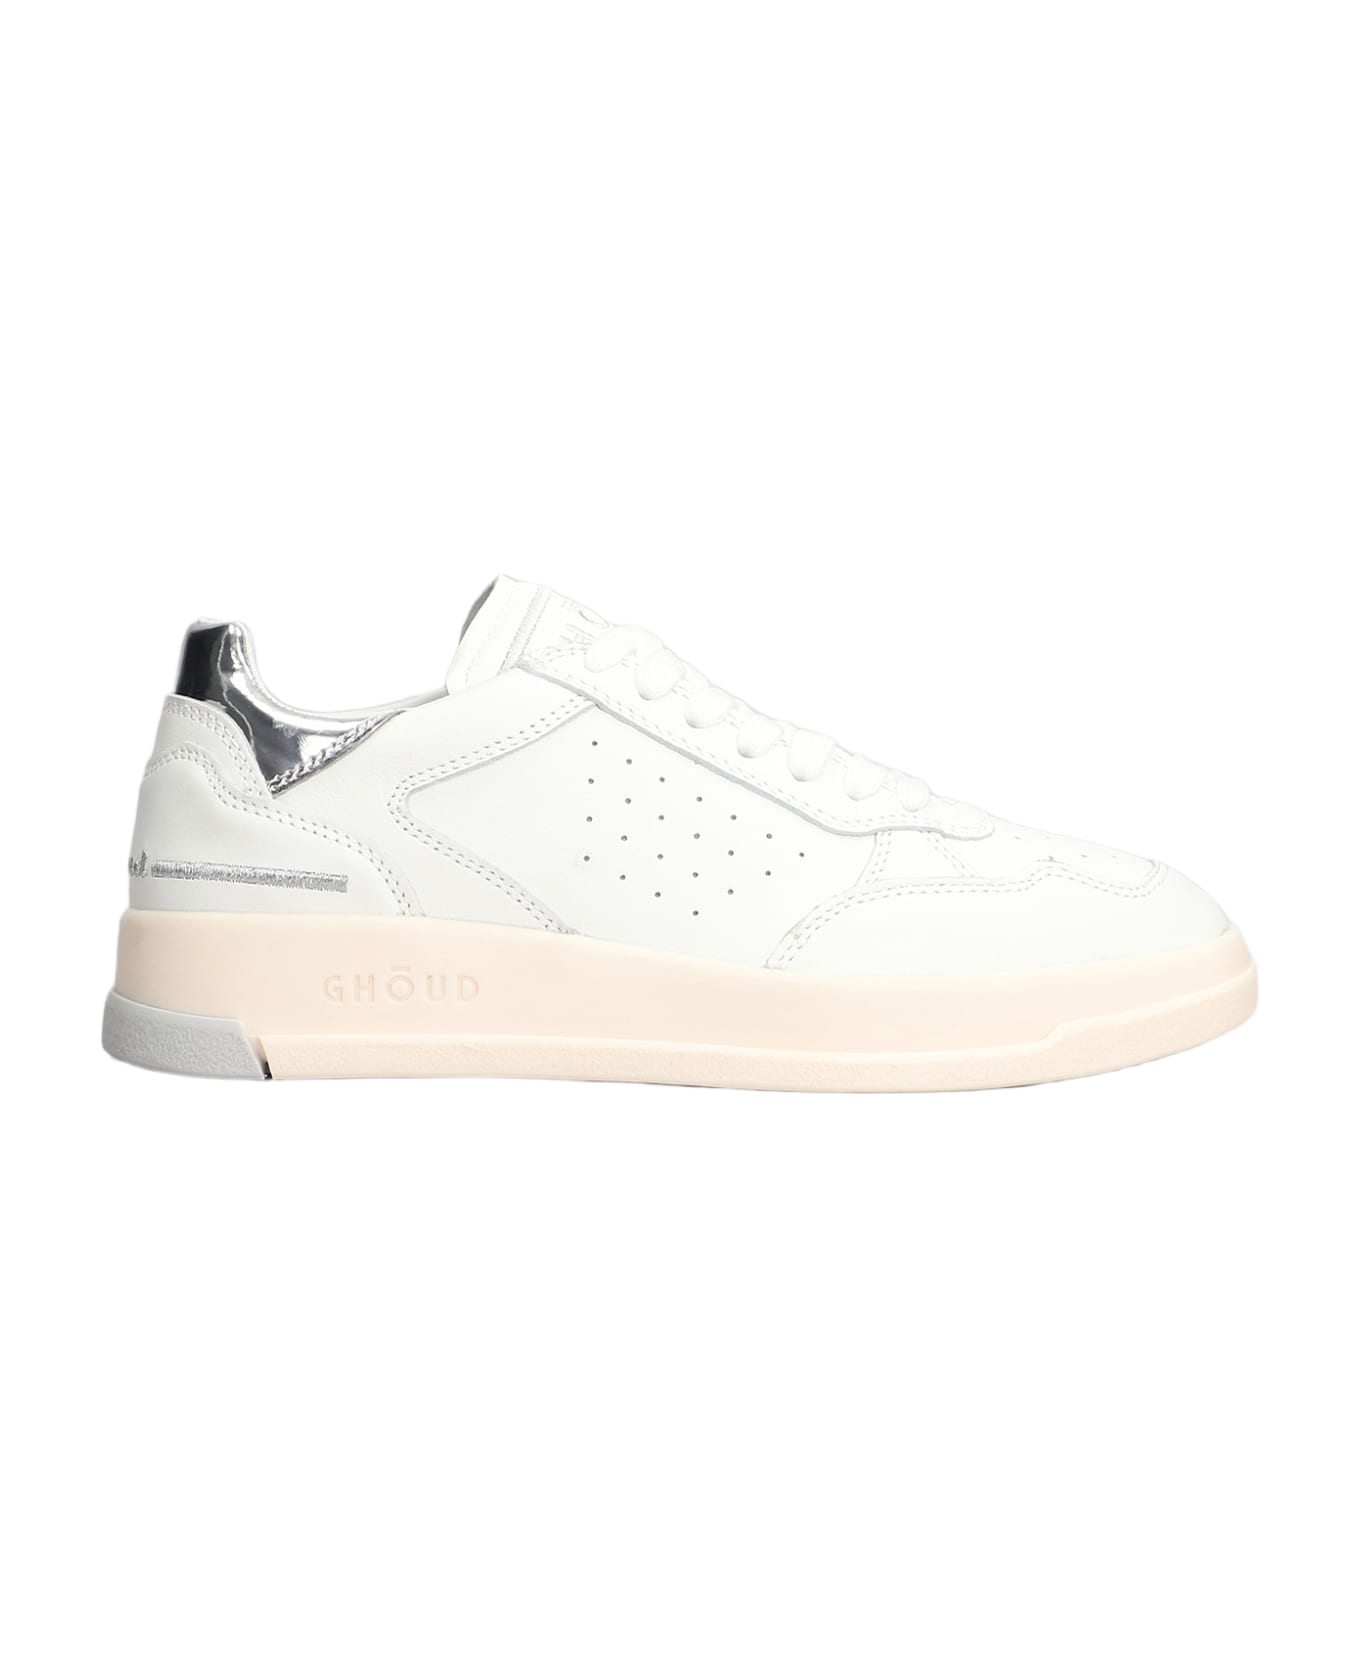 GHOUD Tweener Low Sneakers In White Leather - White